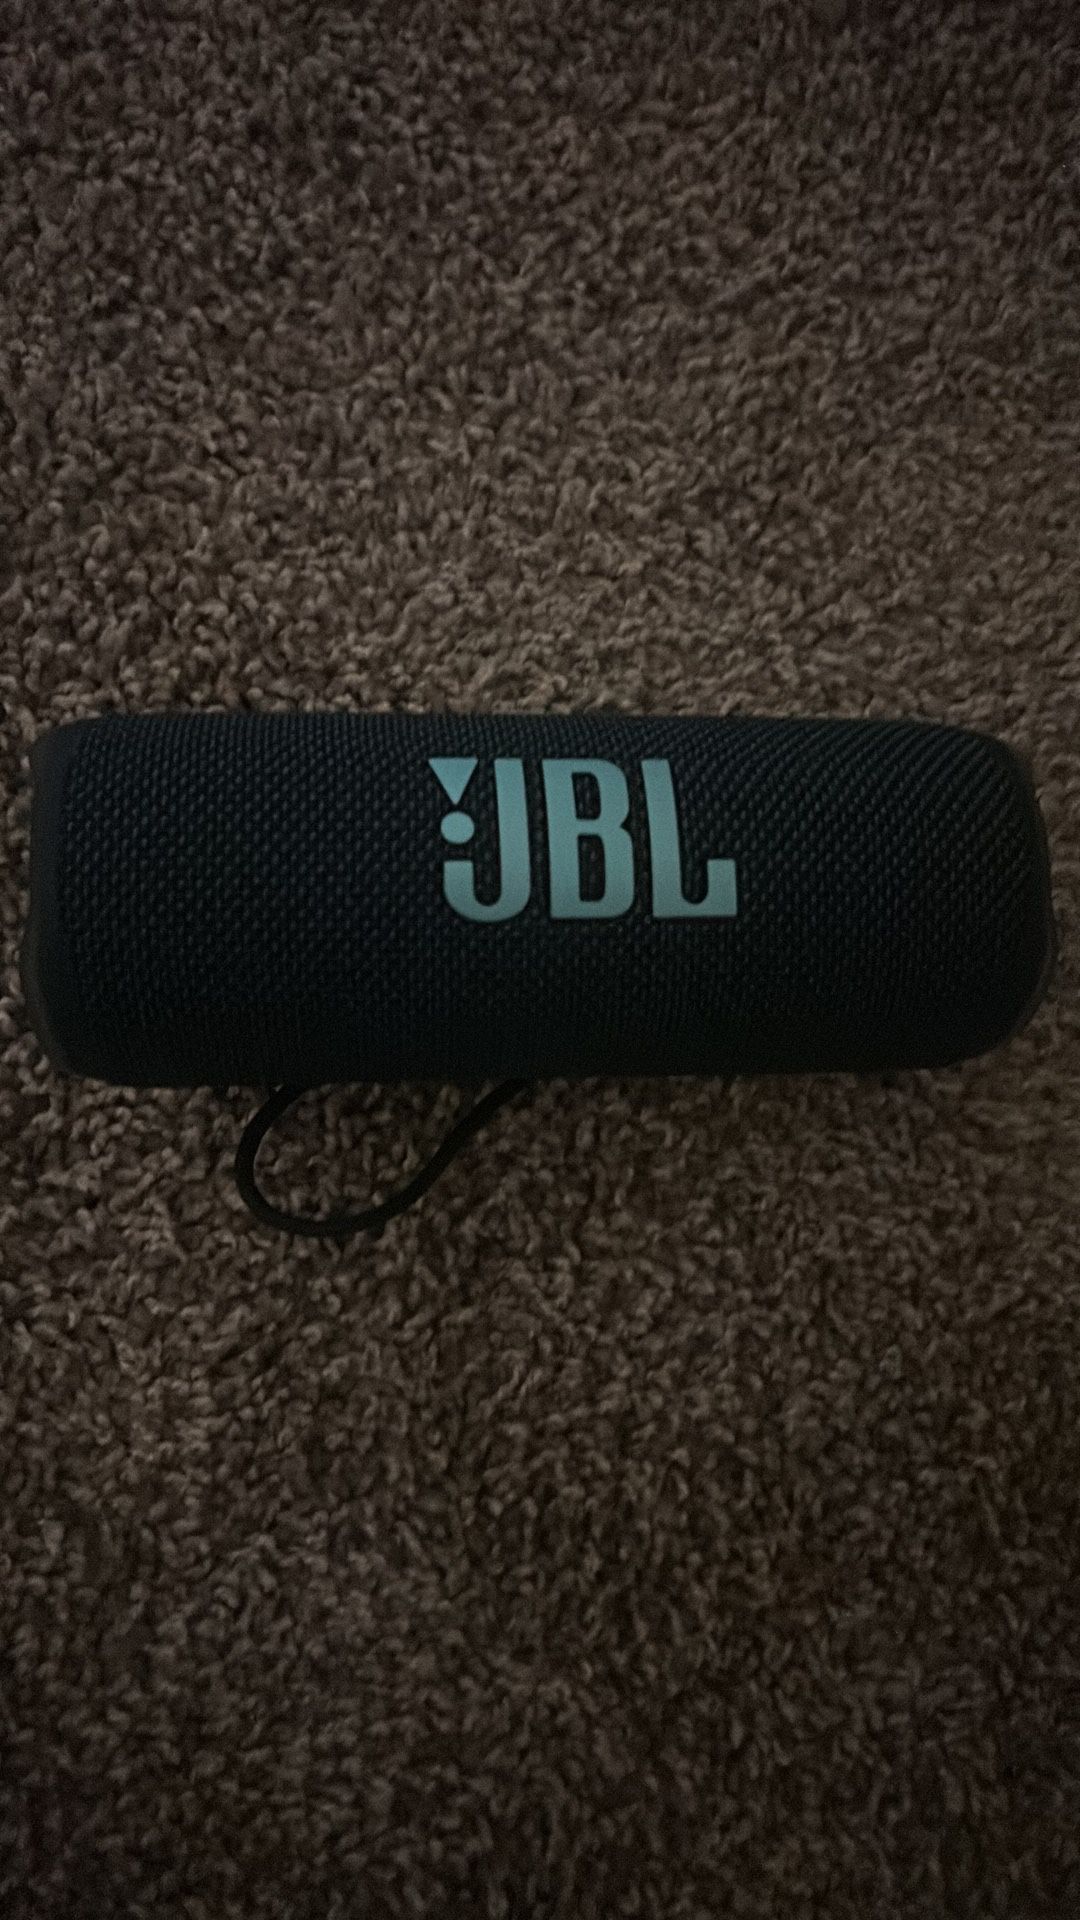 Bluetooth Speaker Brand New Just Got Few Days Ago 